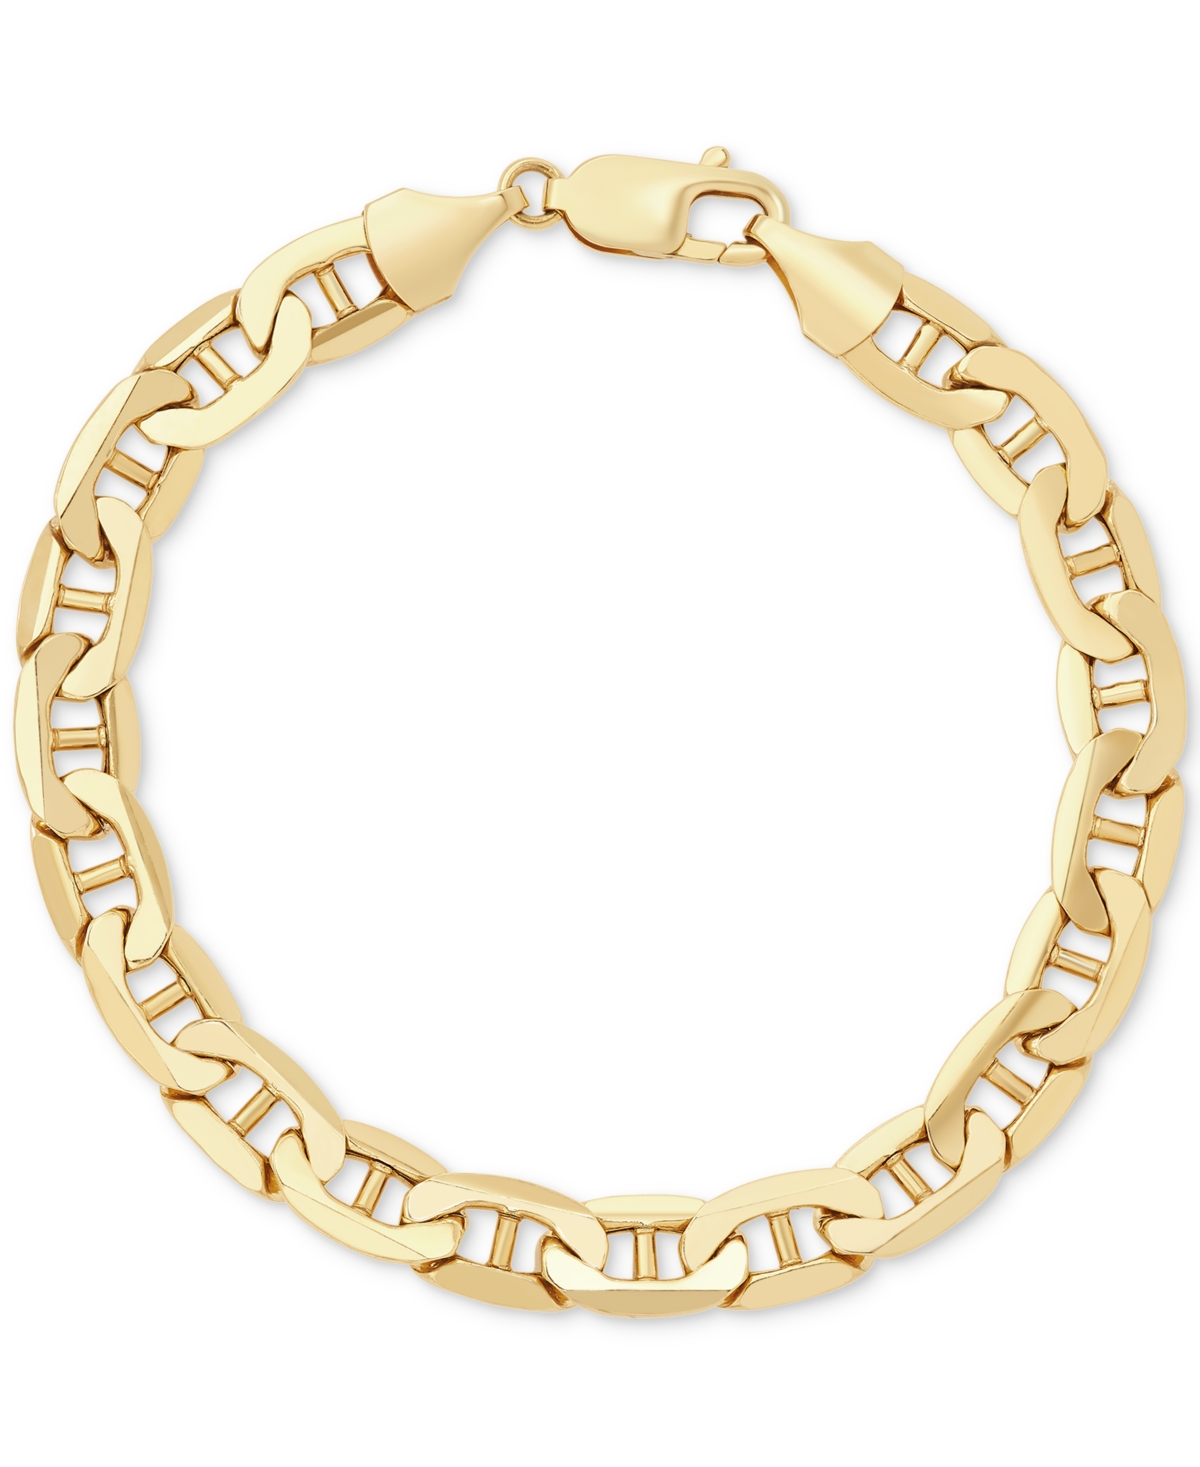 Men's Polished Mariner Link Chain Bracelet in 14k Gold - Gold